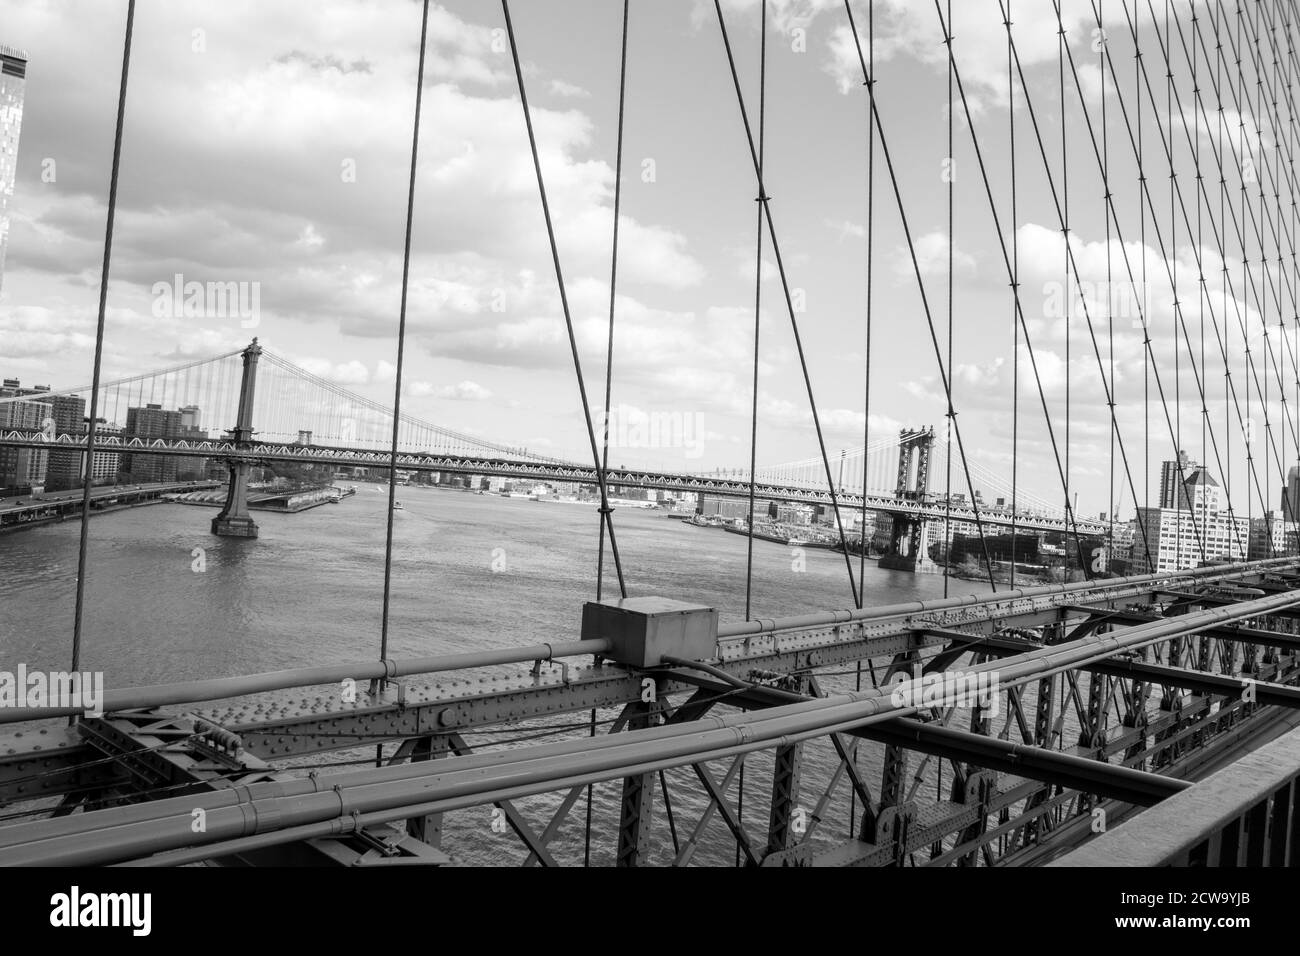 Immagine in scala di grigi del fiume est sul ponte di Brooklyn a New York, USA Foto Stock